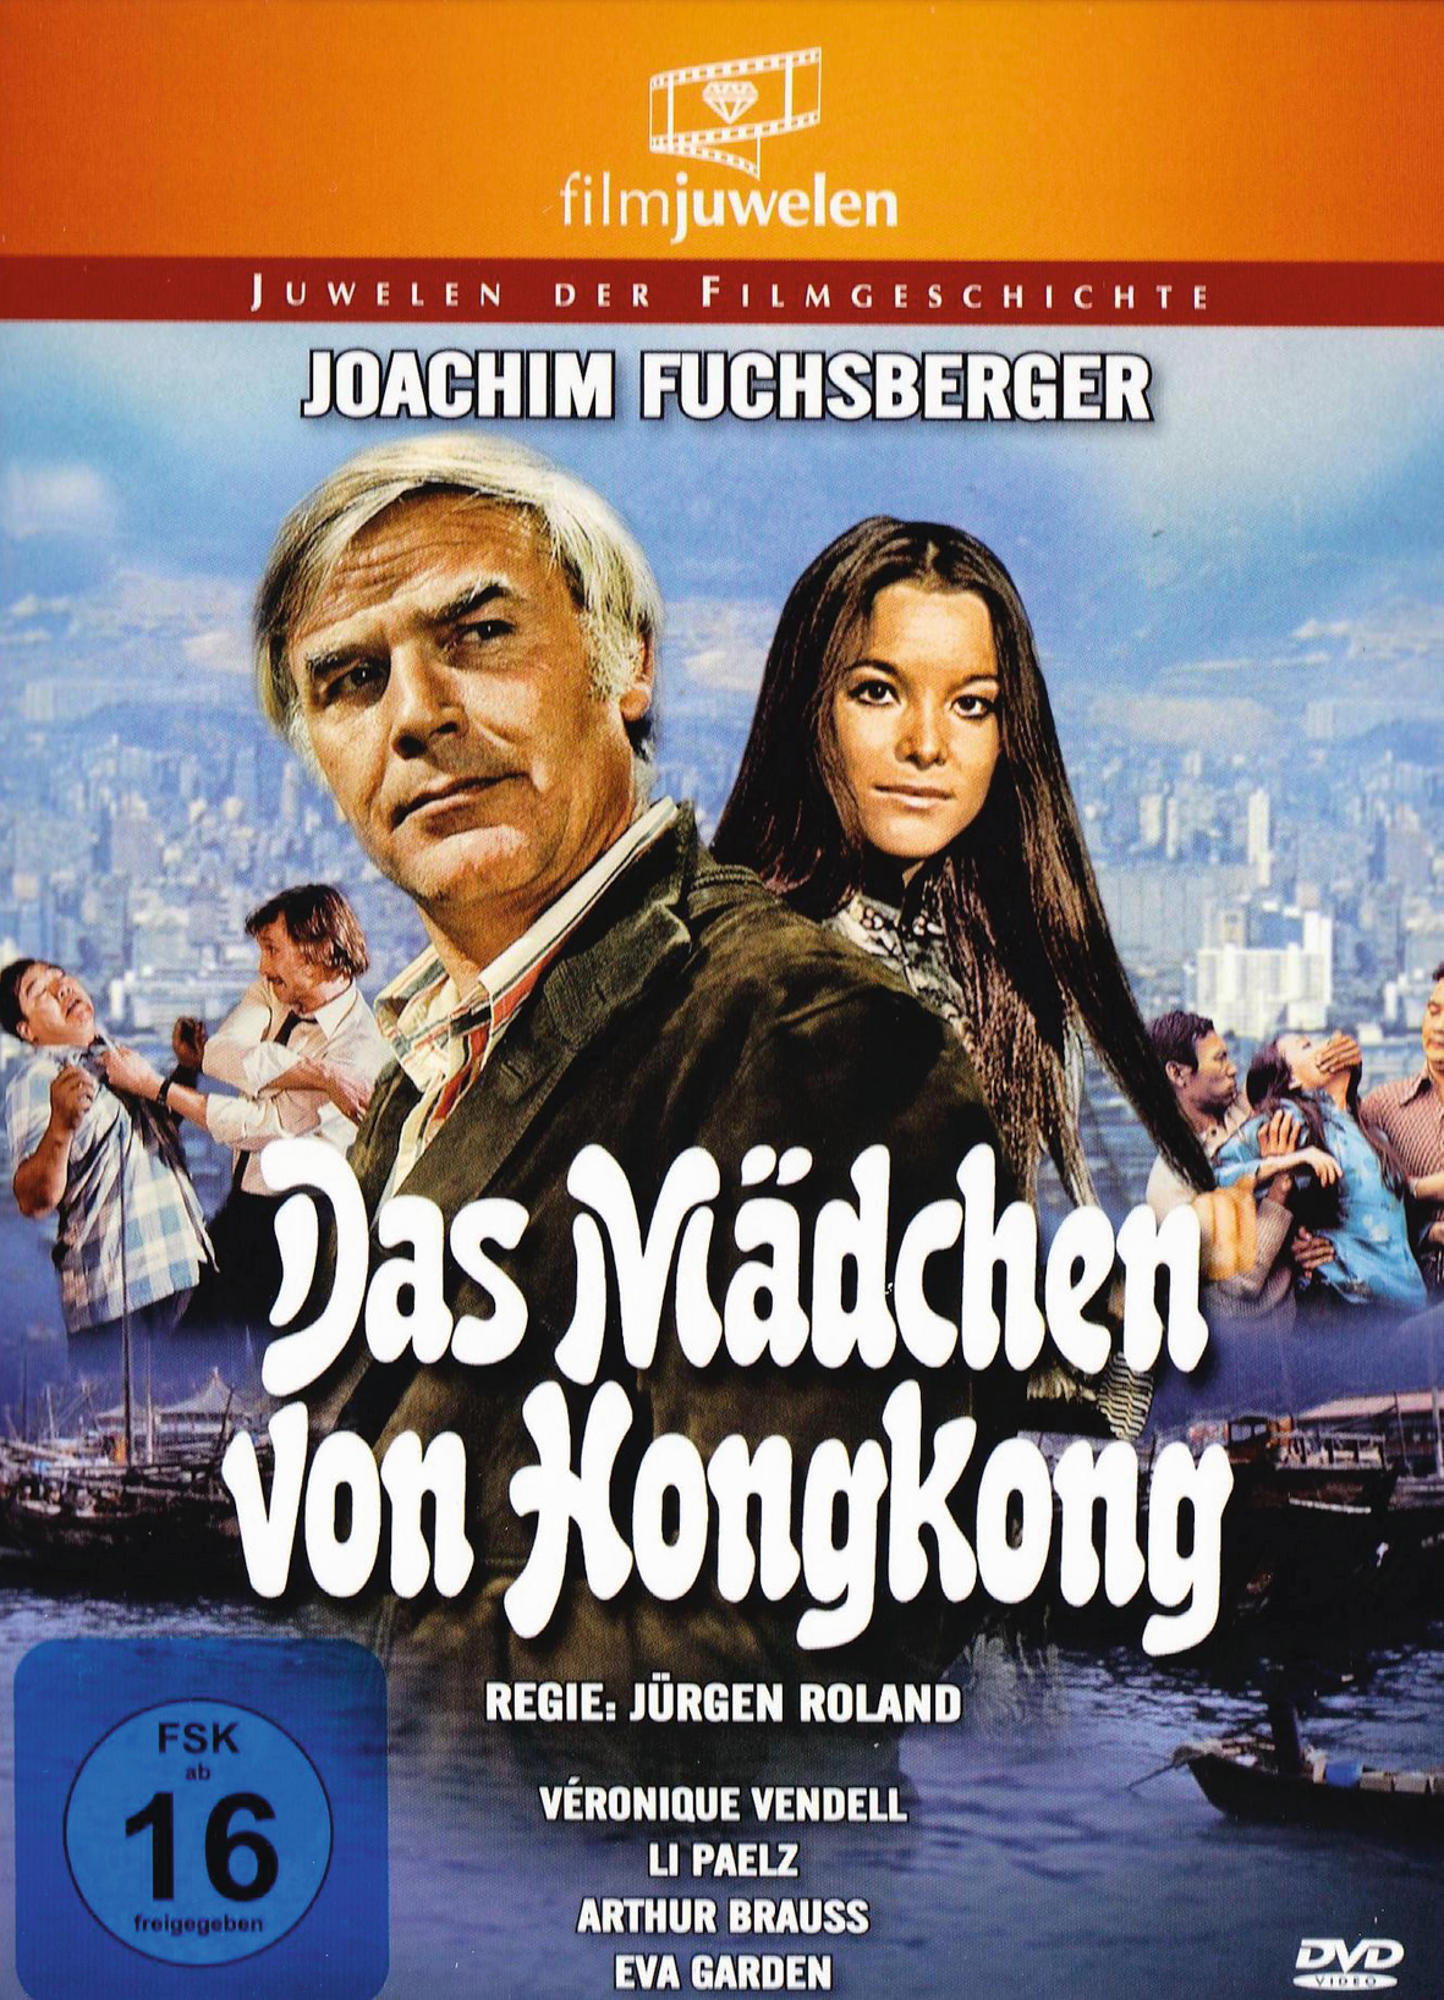 DAS MÄDCHEN VON REISSER) DVD (DIE HONGKONG HONGKONG